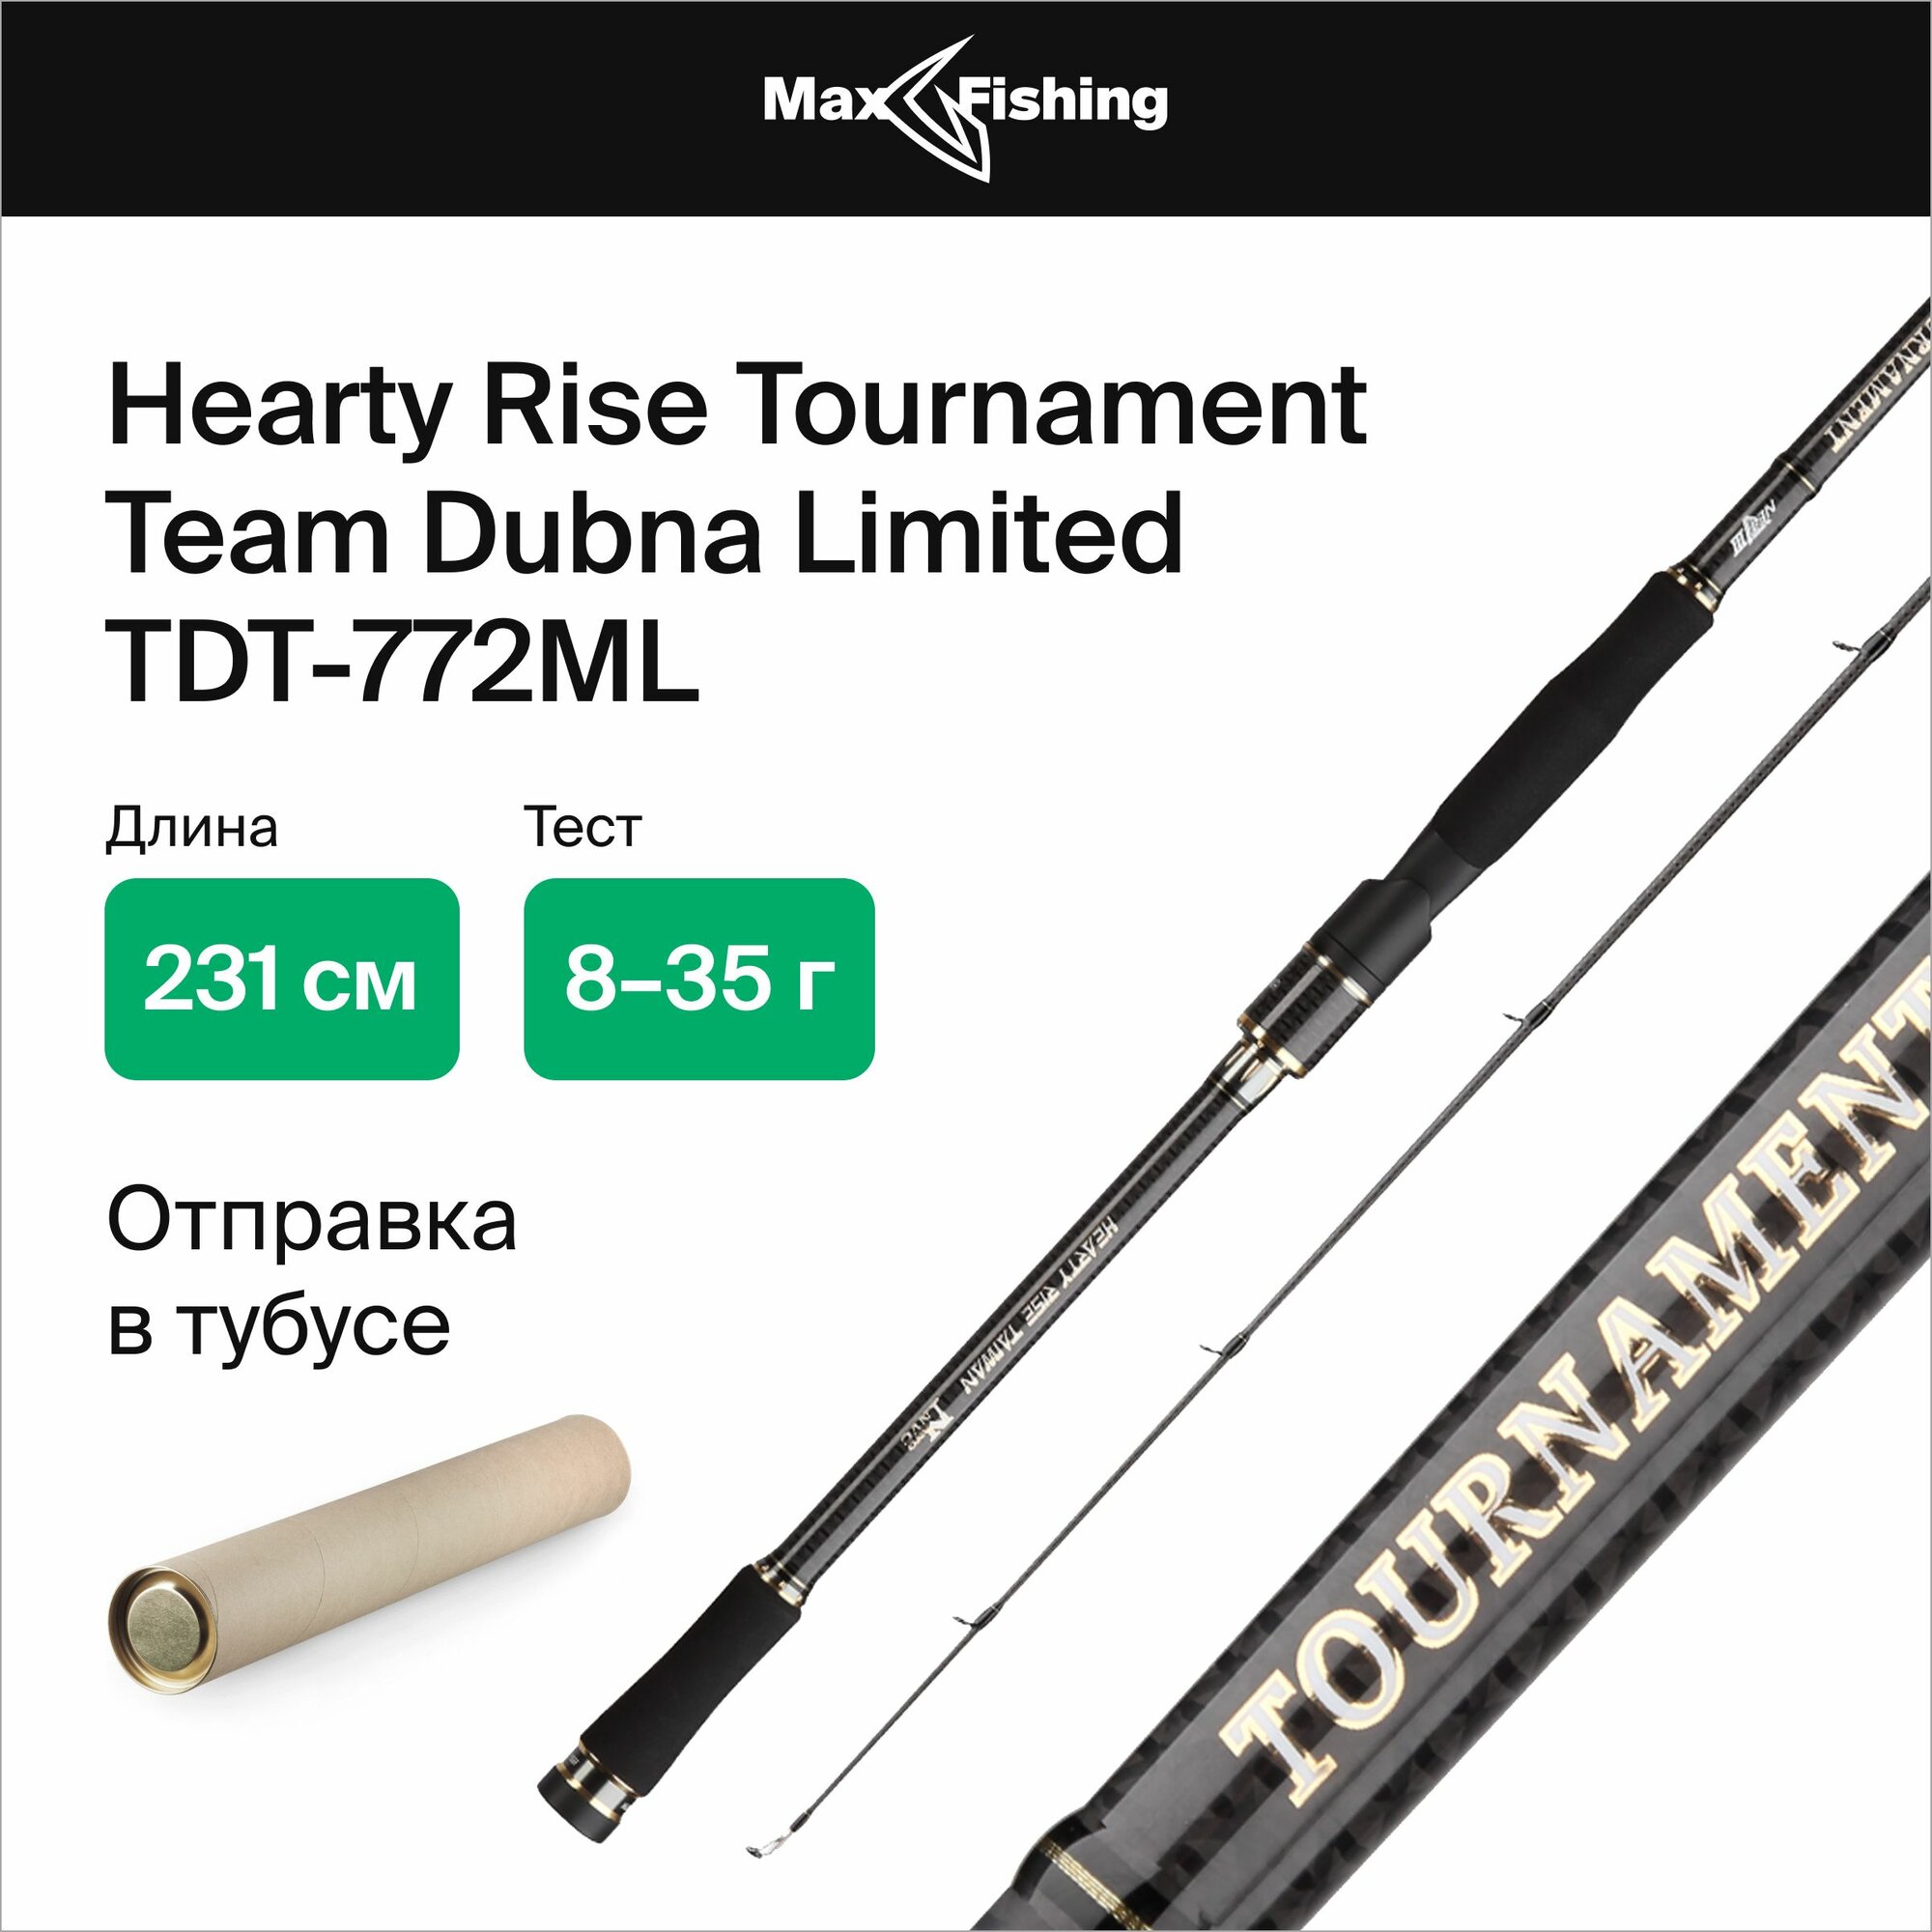 Спиннинг для рыбалки Hearty Rise Tournament Team Dubna Limited TDT-772ML 8-35гр, 231 см, для ловли окуня, щуки, судака, жереха, удилище спиннинговое